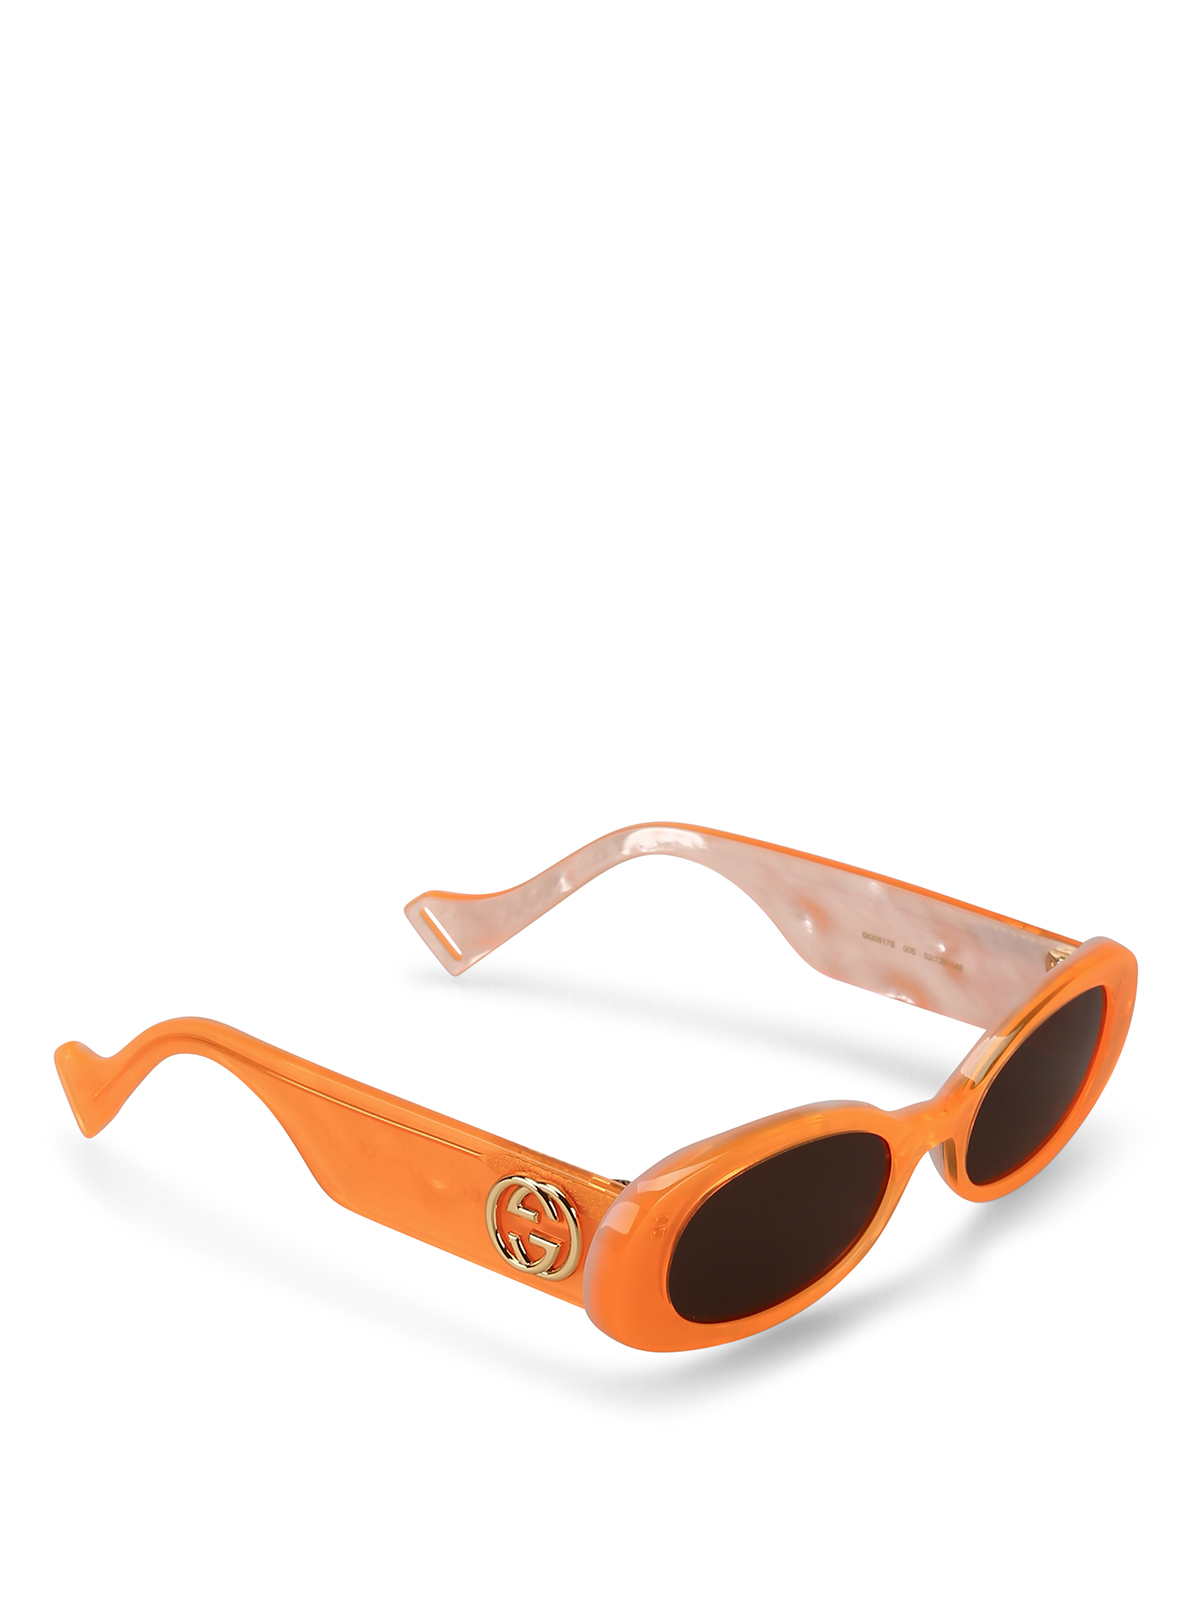 Gucci - Pearly orange oval sunglasses 